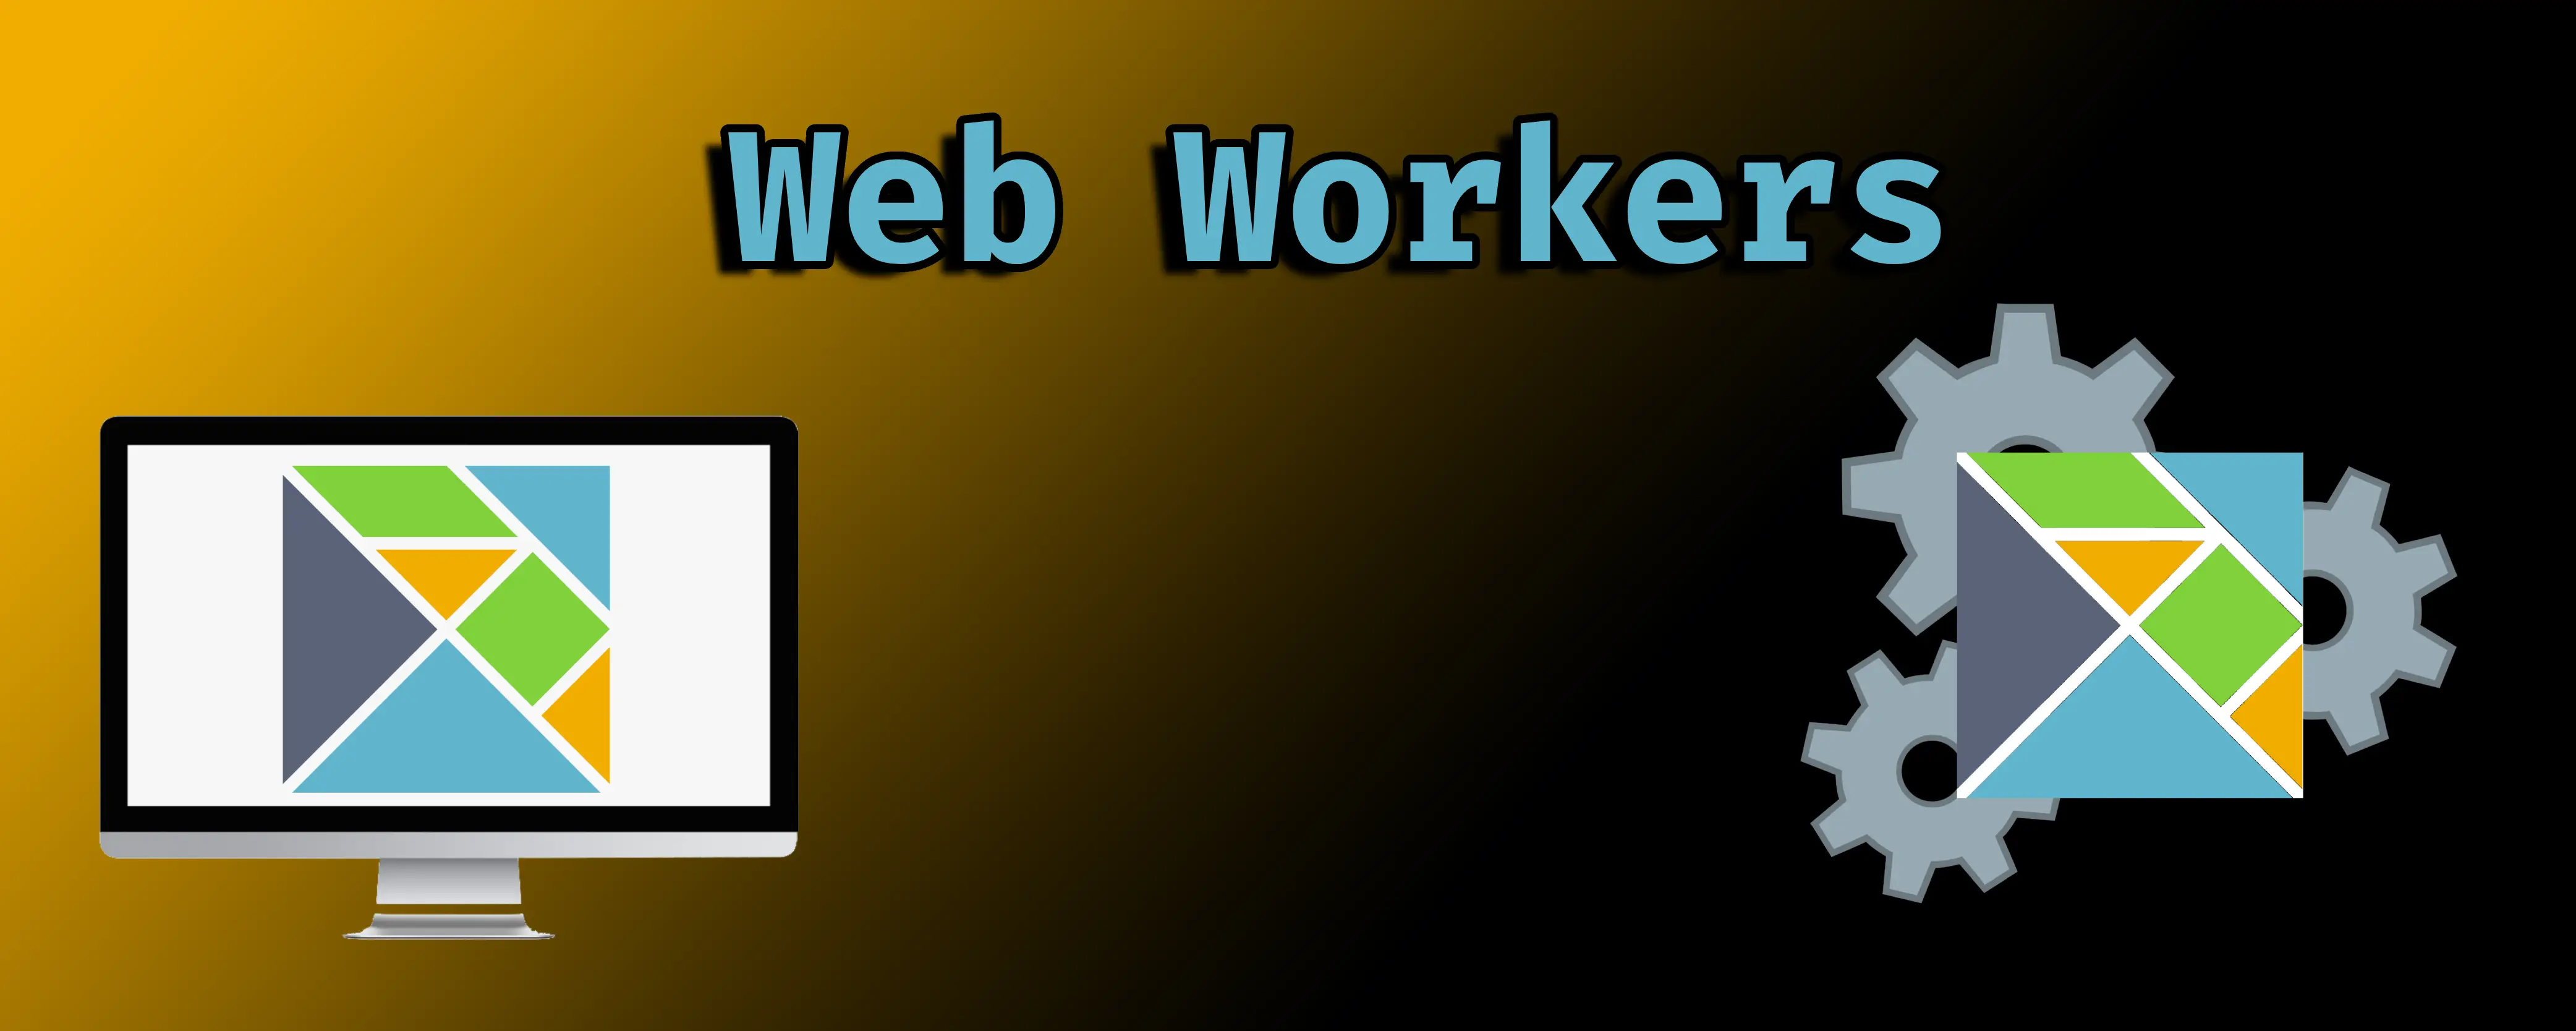 Utilizing Elm in a Web Worker